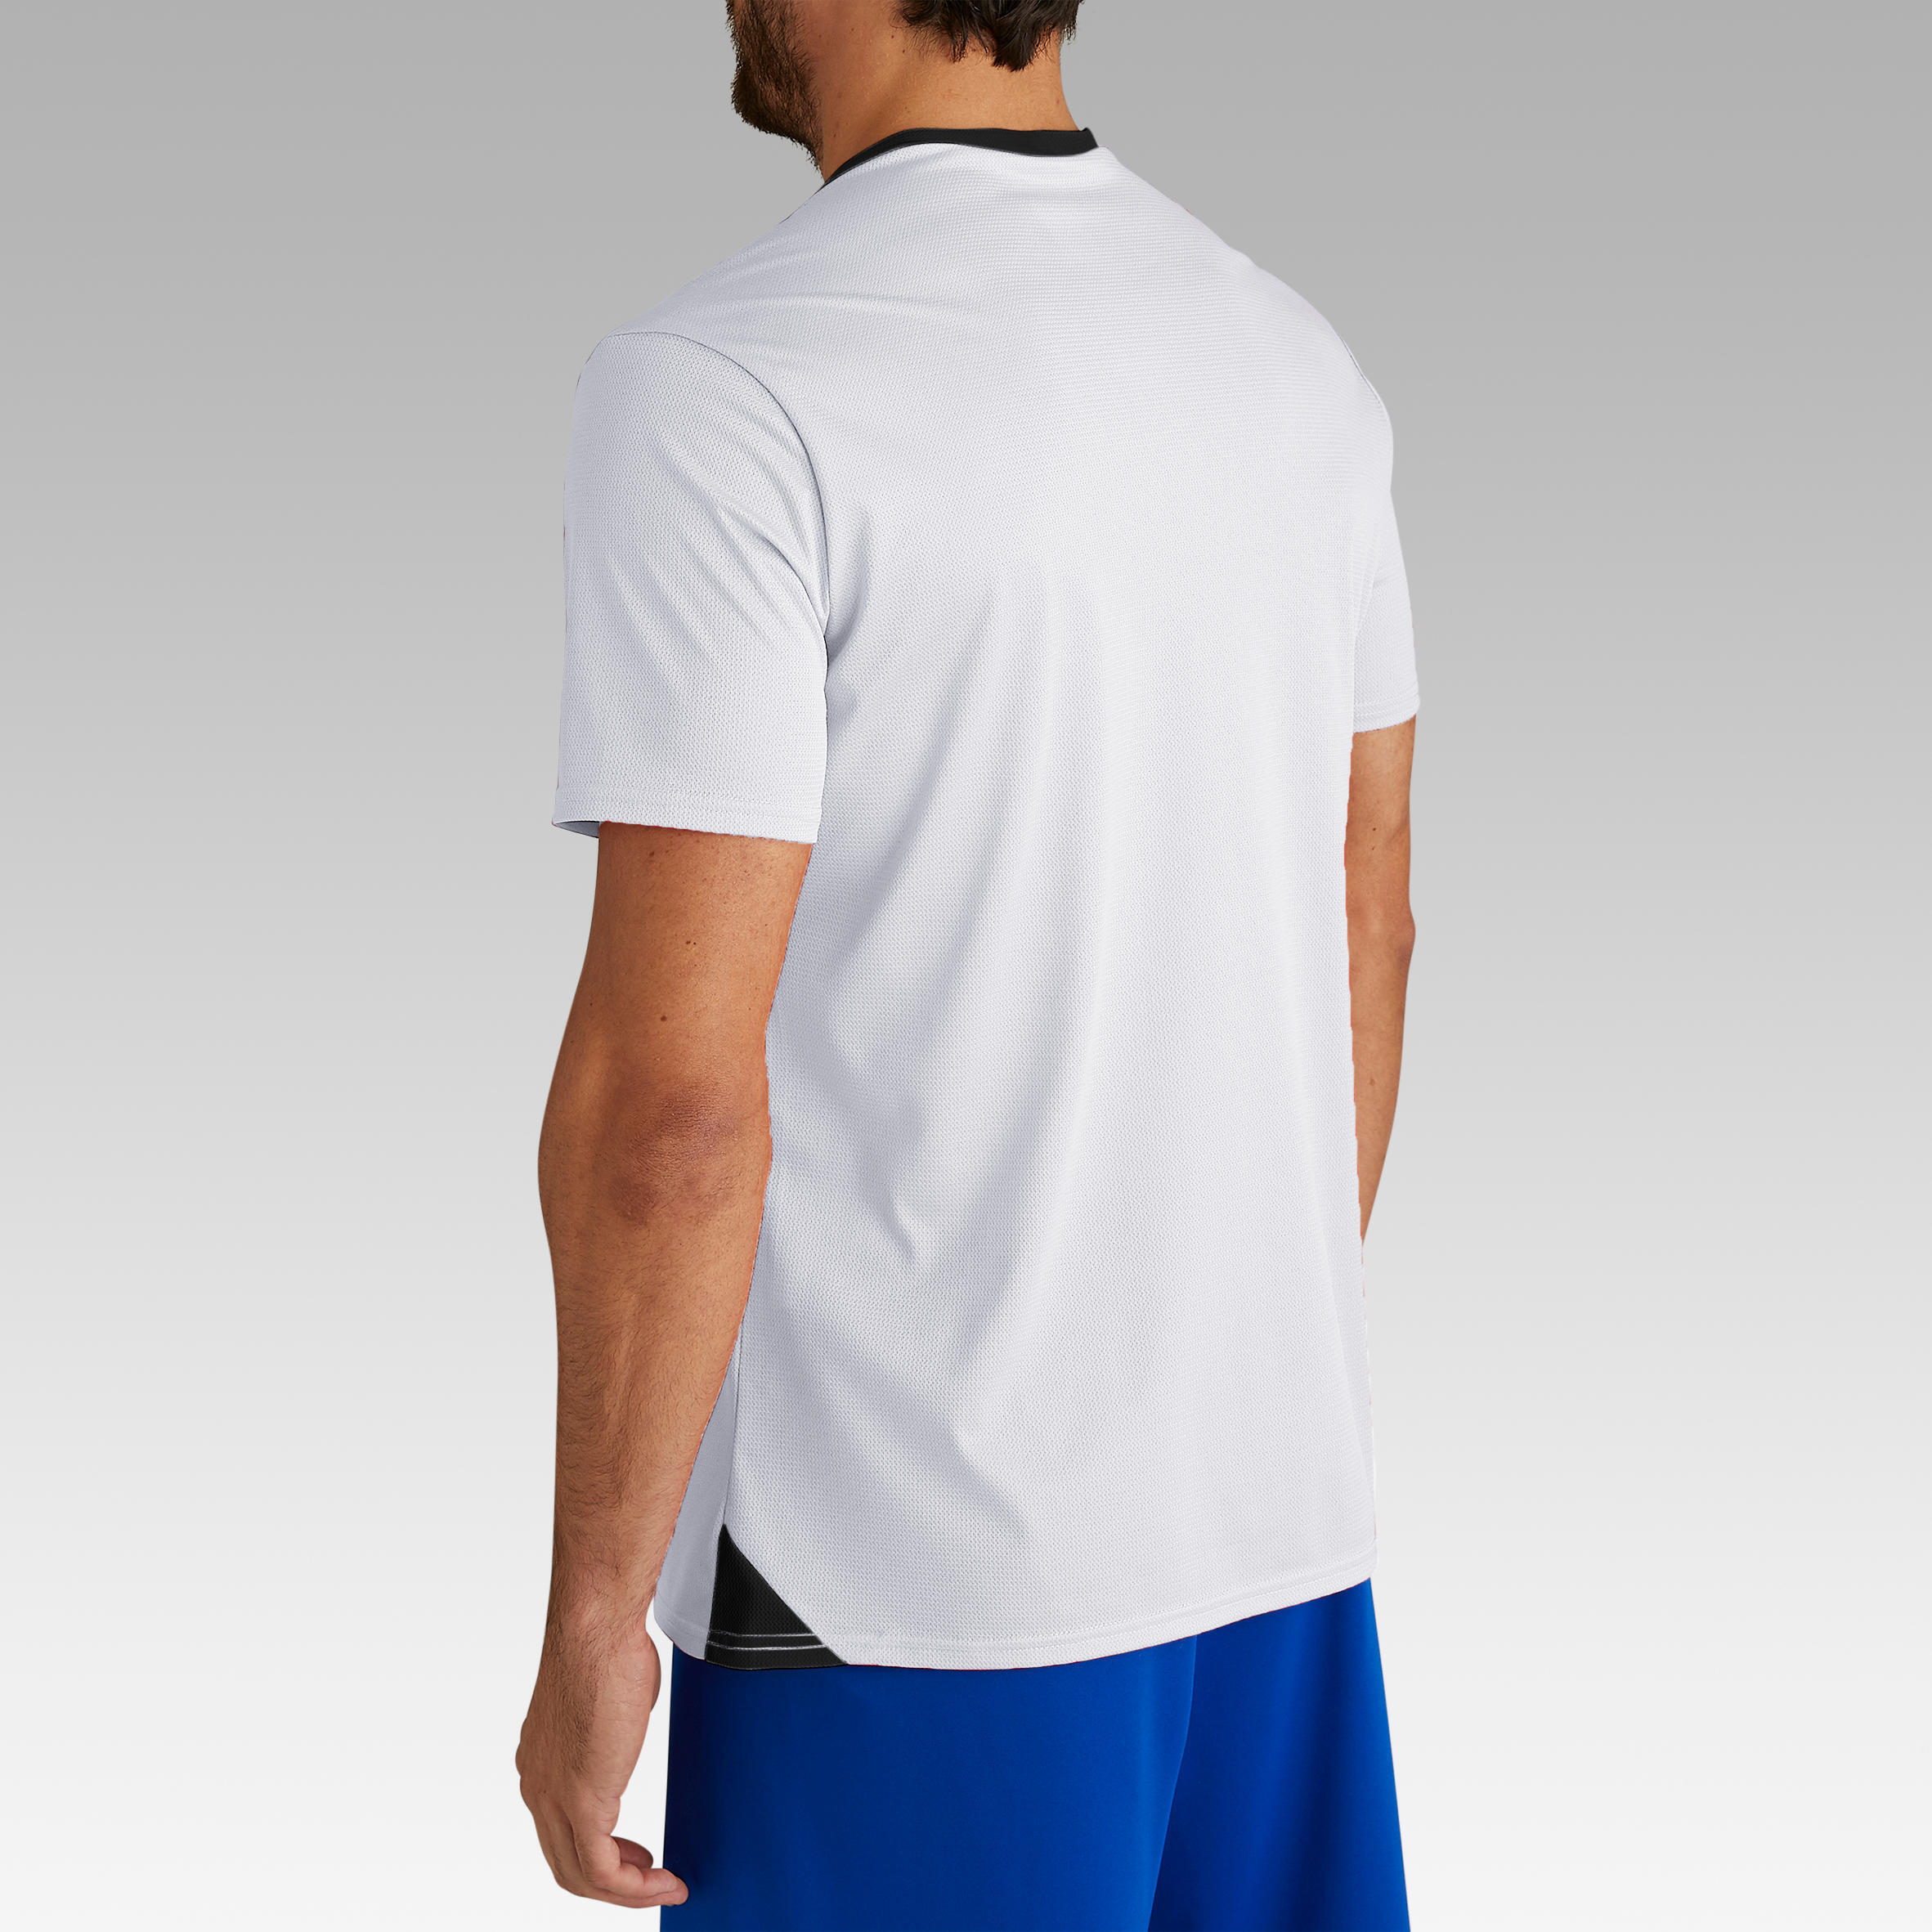 Adult Football Shirt Essential Club - White 18/29